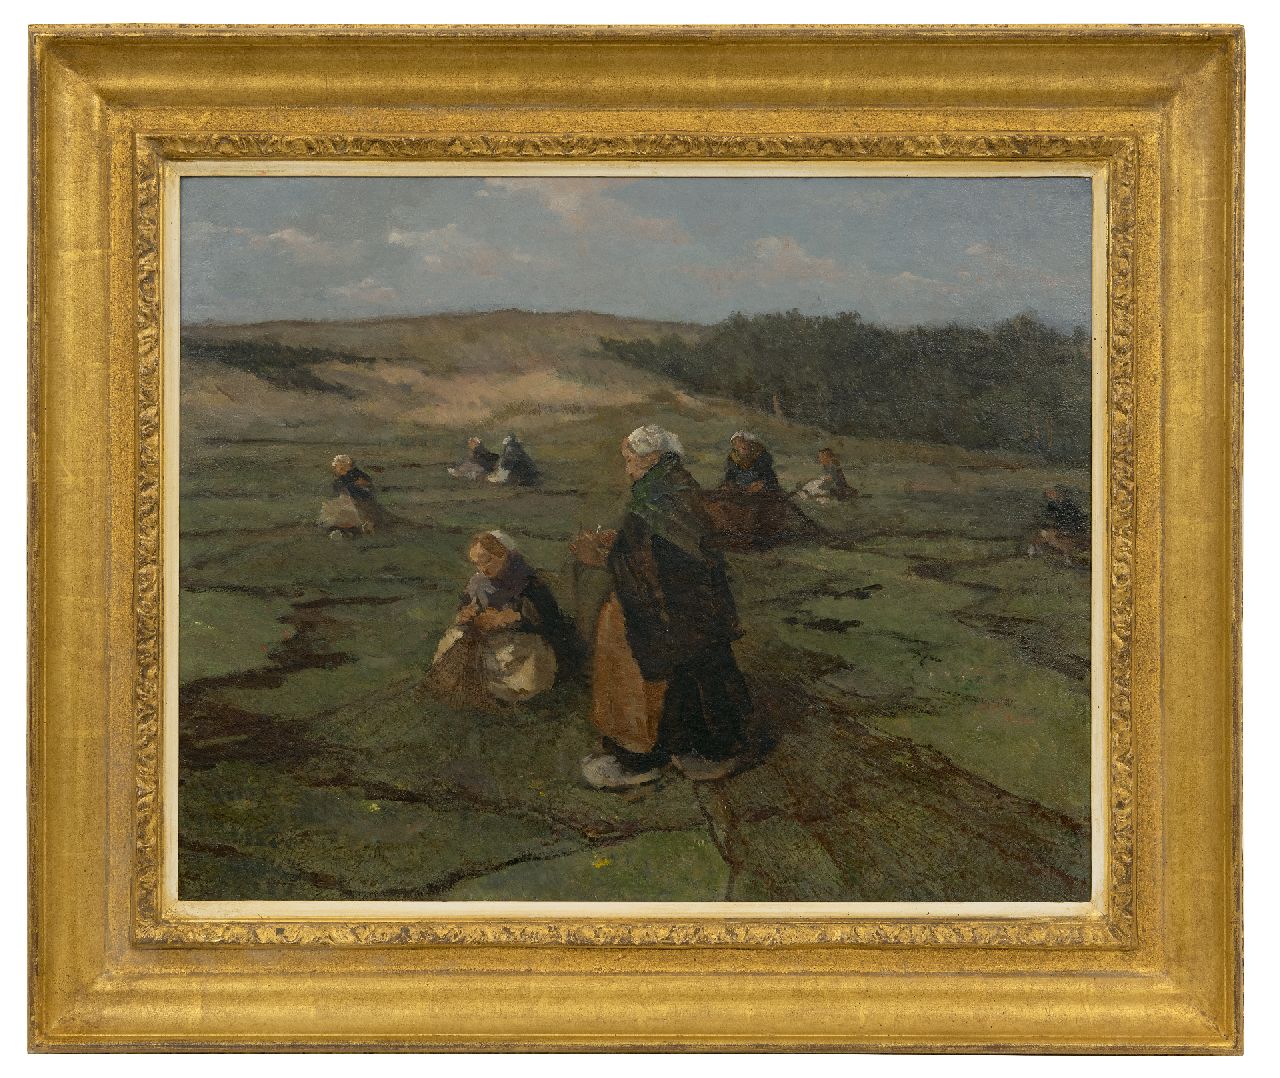 Akkeringa J.E.H.  | 'Johannes Evert' Hendrik Akkeringa | Schilderijen te koop aangeboden | Nettenboetsters in de duinen, olieverf op doek op paneel 47,1 x 58,4 cm